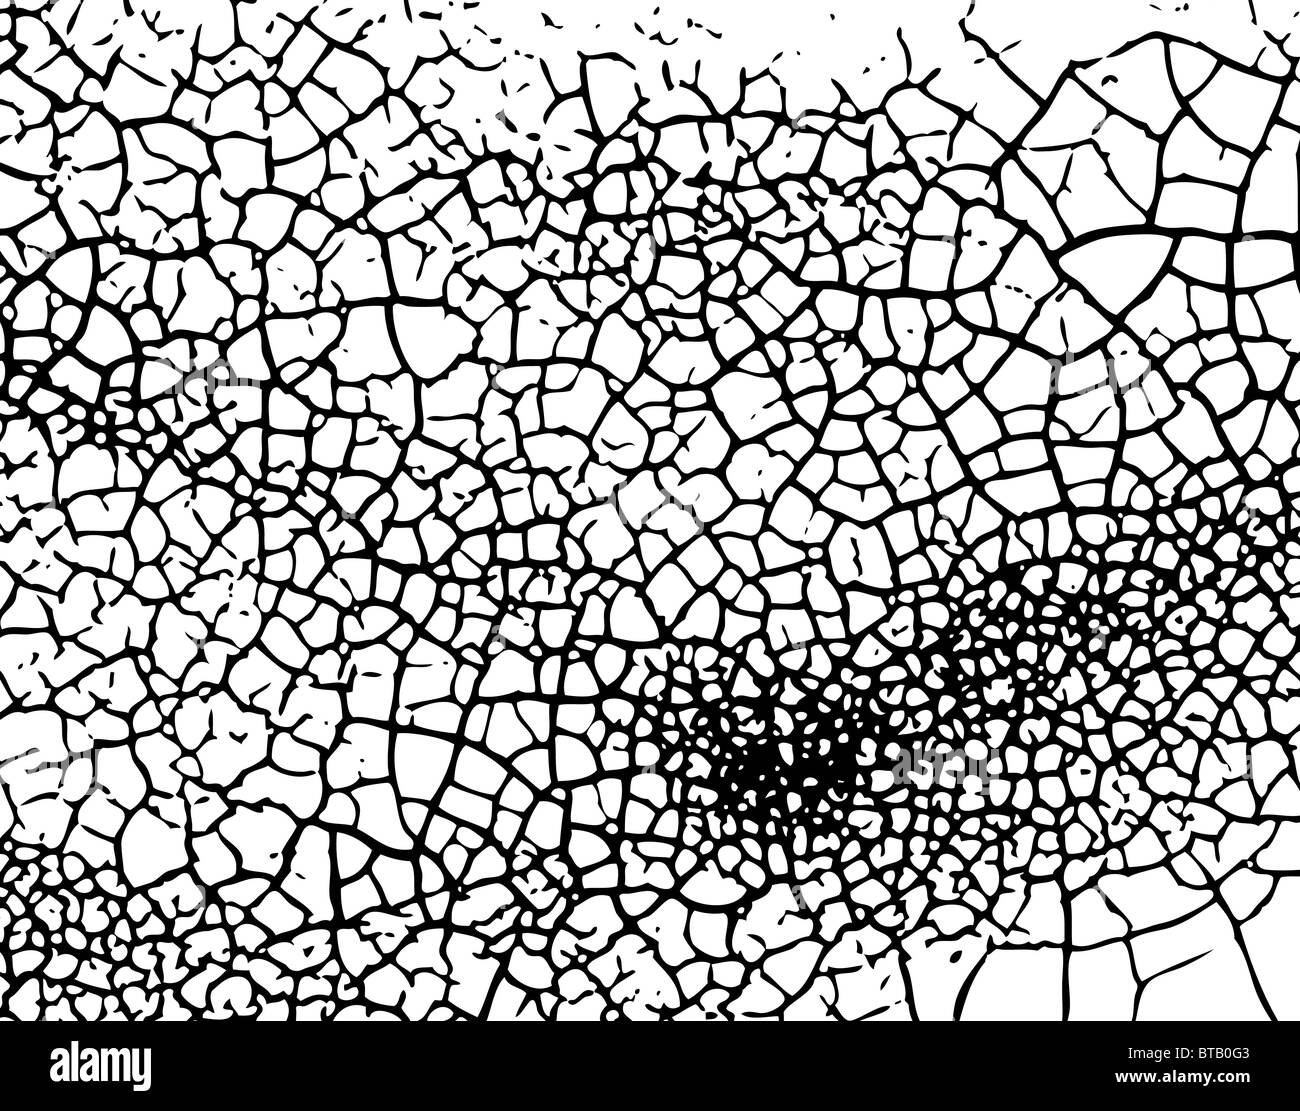 Background illustration of cracked grunge pattern Stock Photo